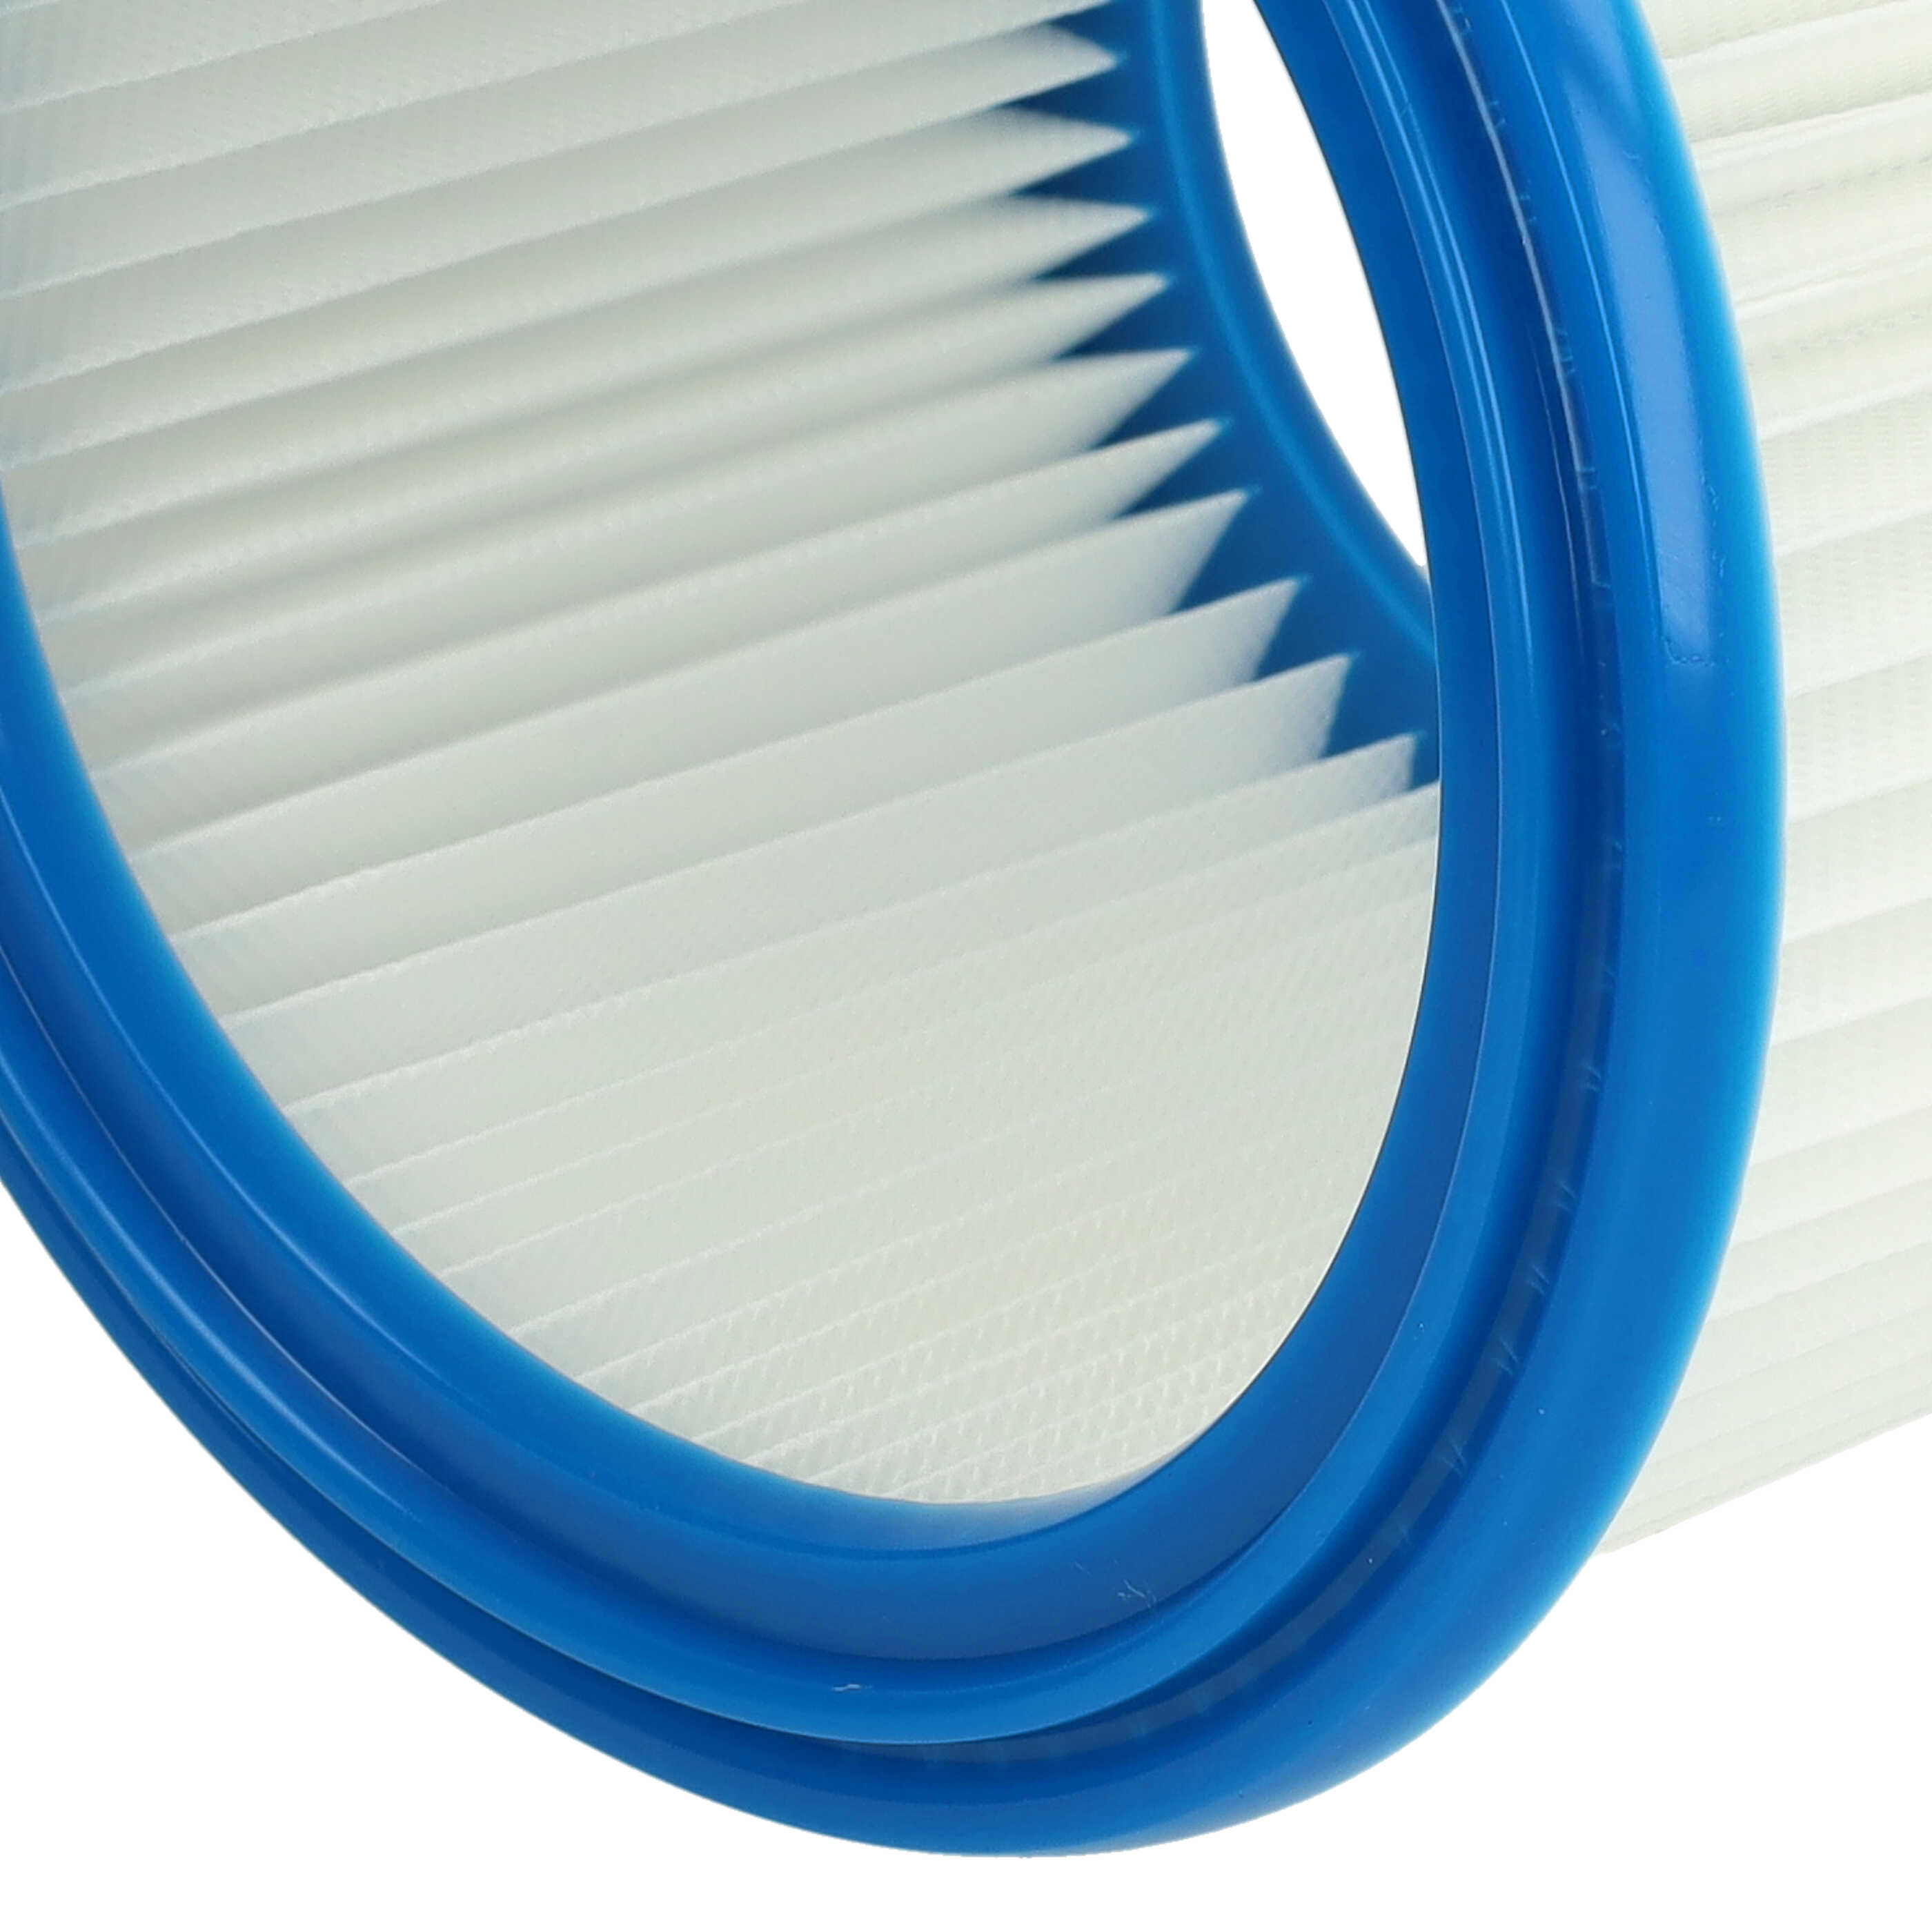 Filtr do odkurzacza Bosch zamiennik Bosch 2607432024 - filtr okrągły, biały / niebieski